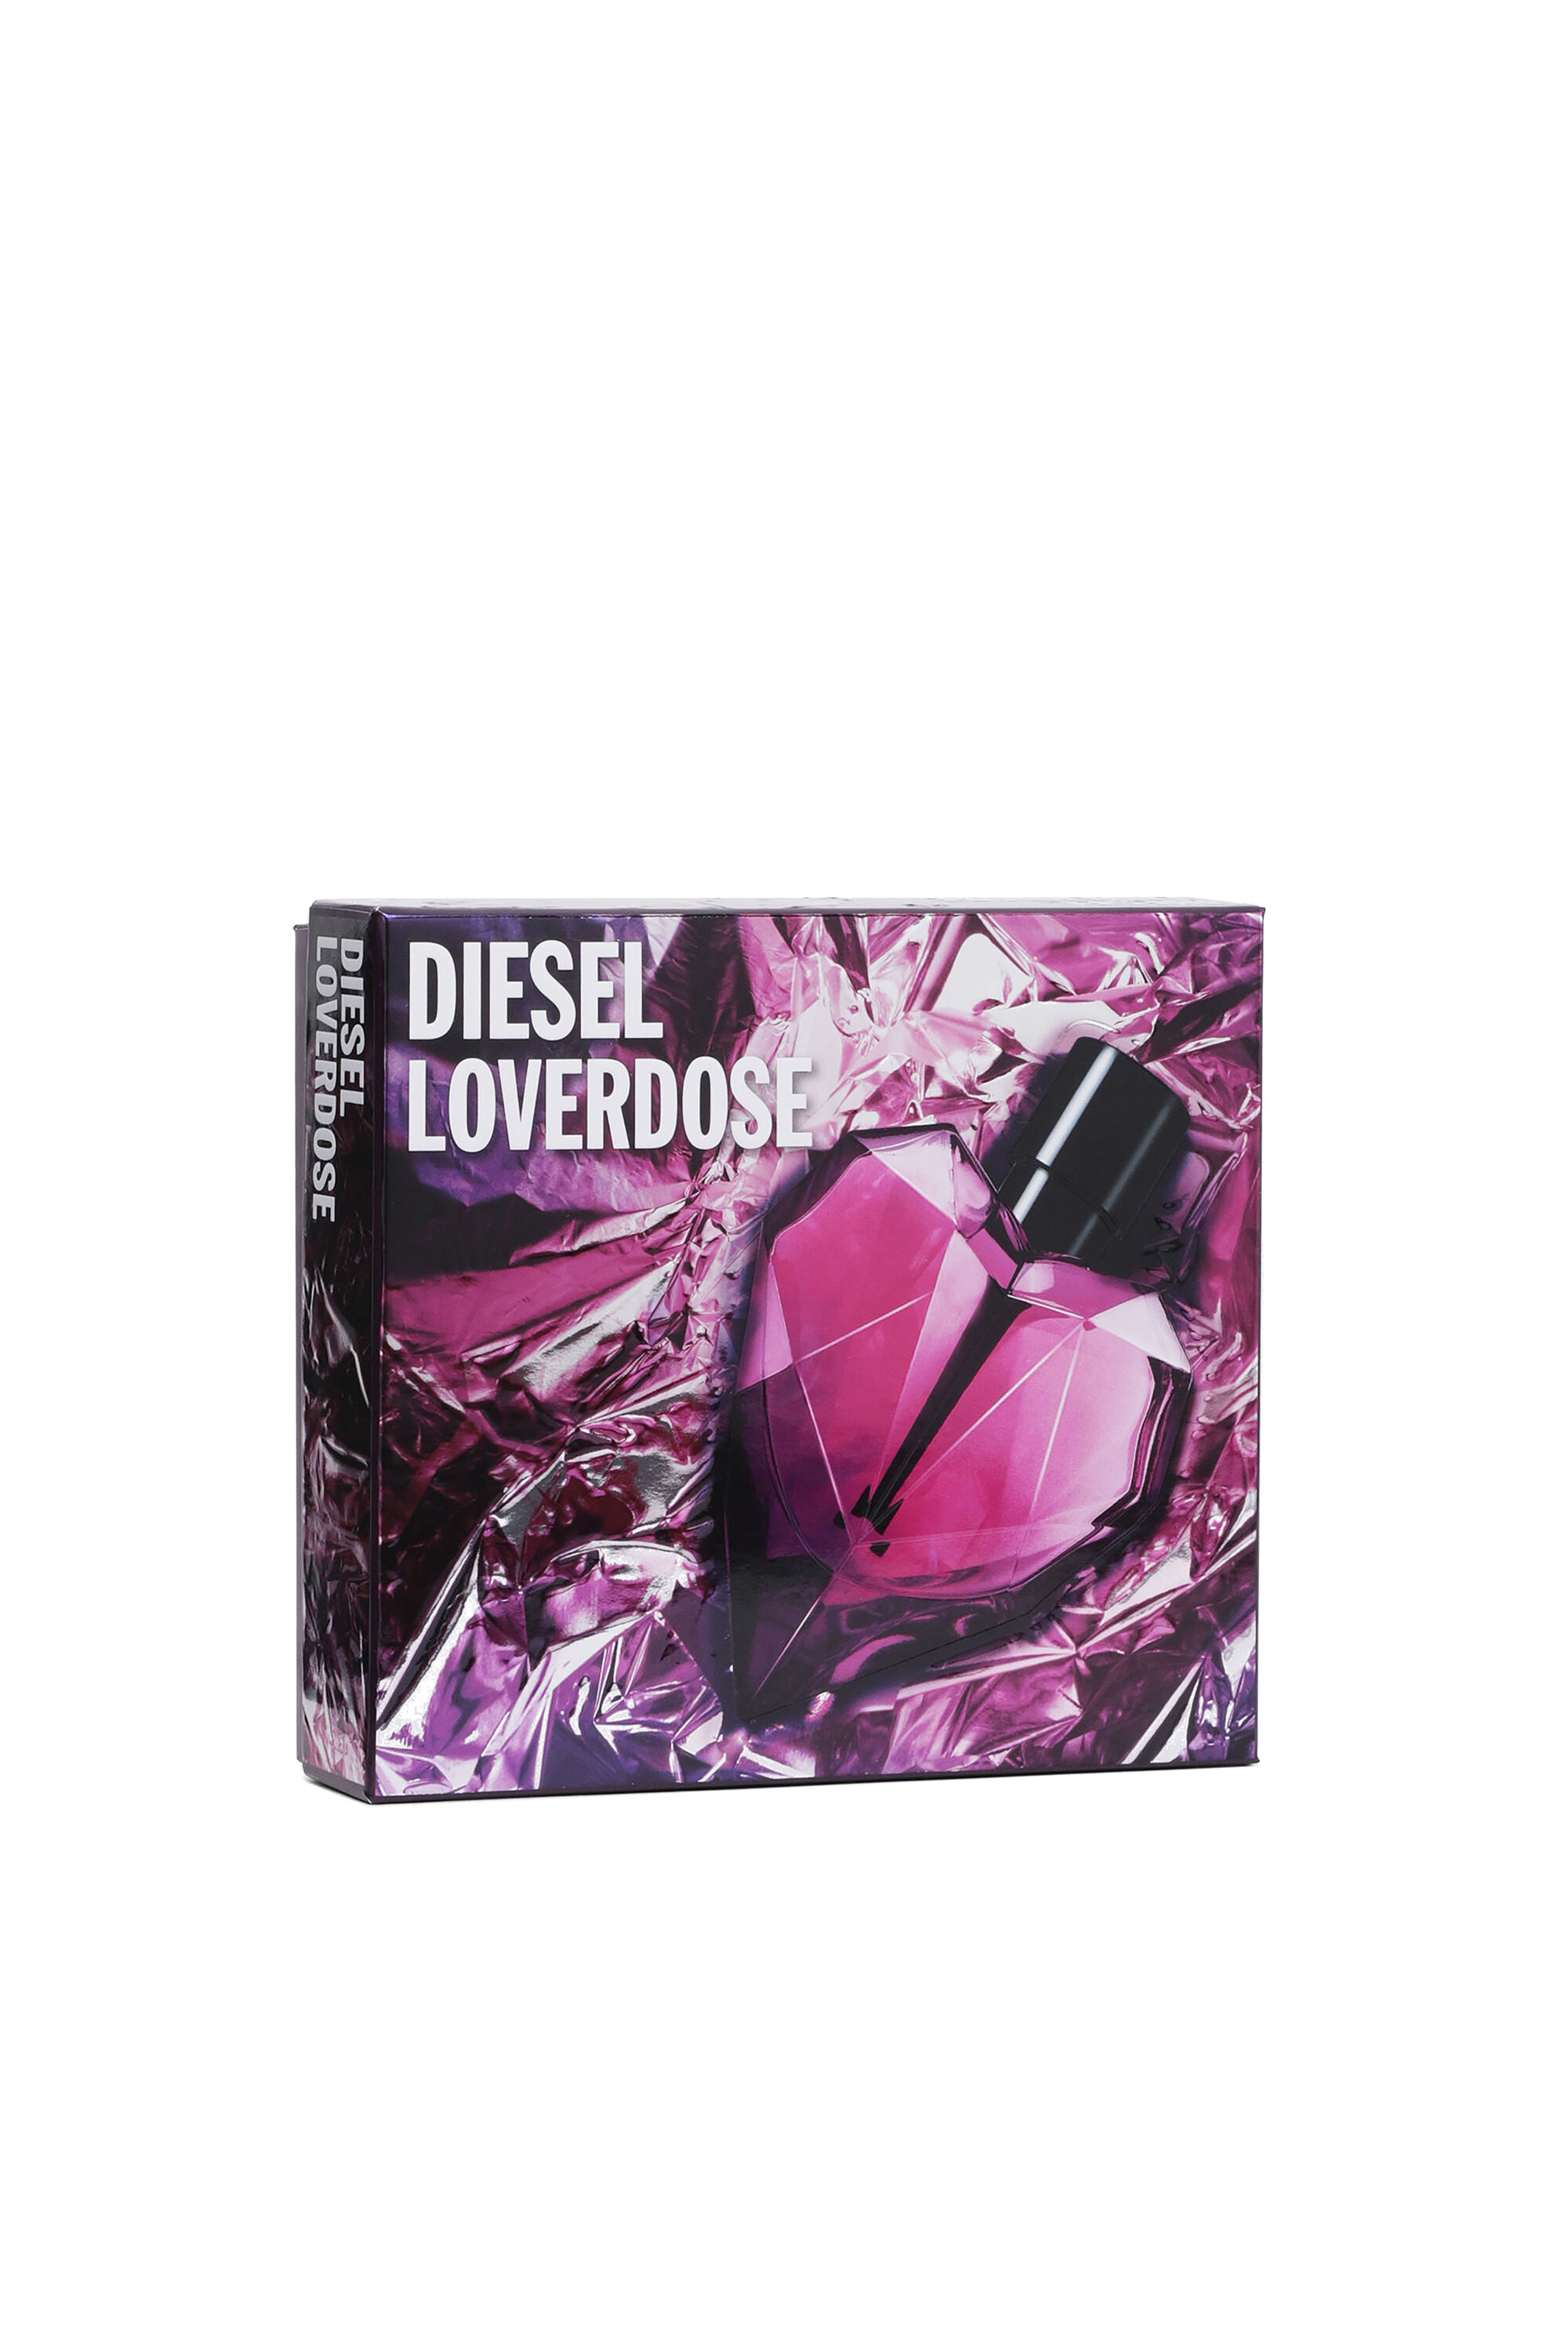 Diesel - LOVERDOSE 30ML GIFT SET, Generisch - Image 1